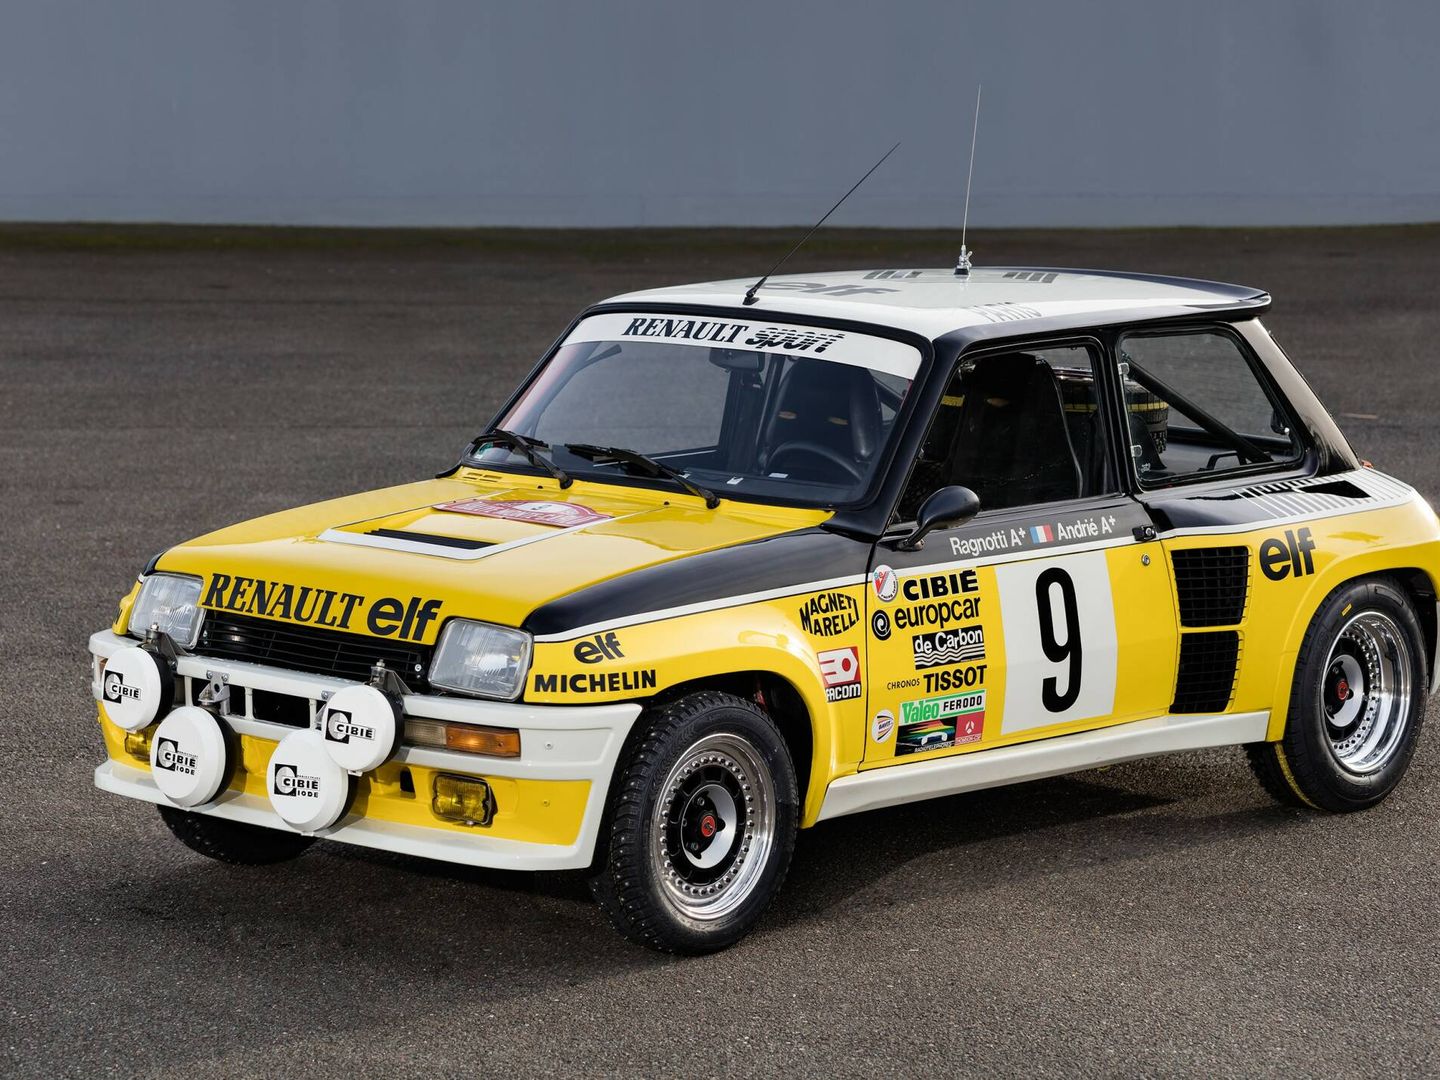 El Renault 5 Turbo 'culo gordo' fue uno de los coches a batir en los rallies de los 80.